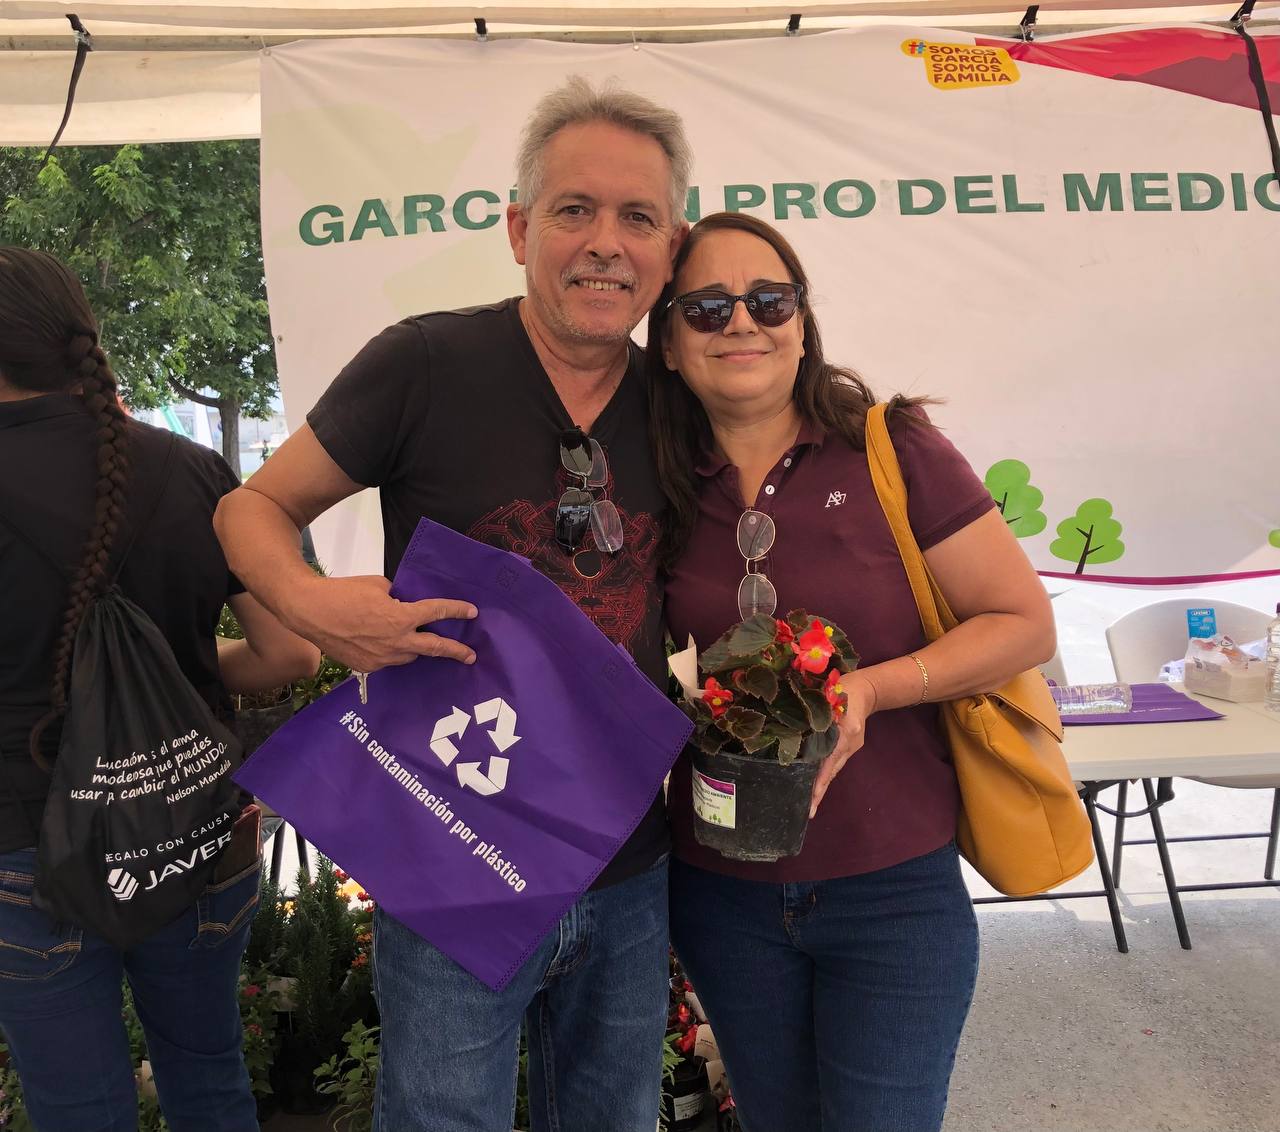 Reciclan en García a favor el medio ambiente